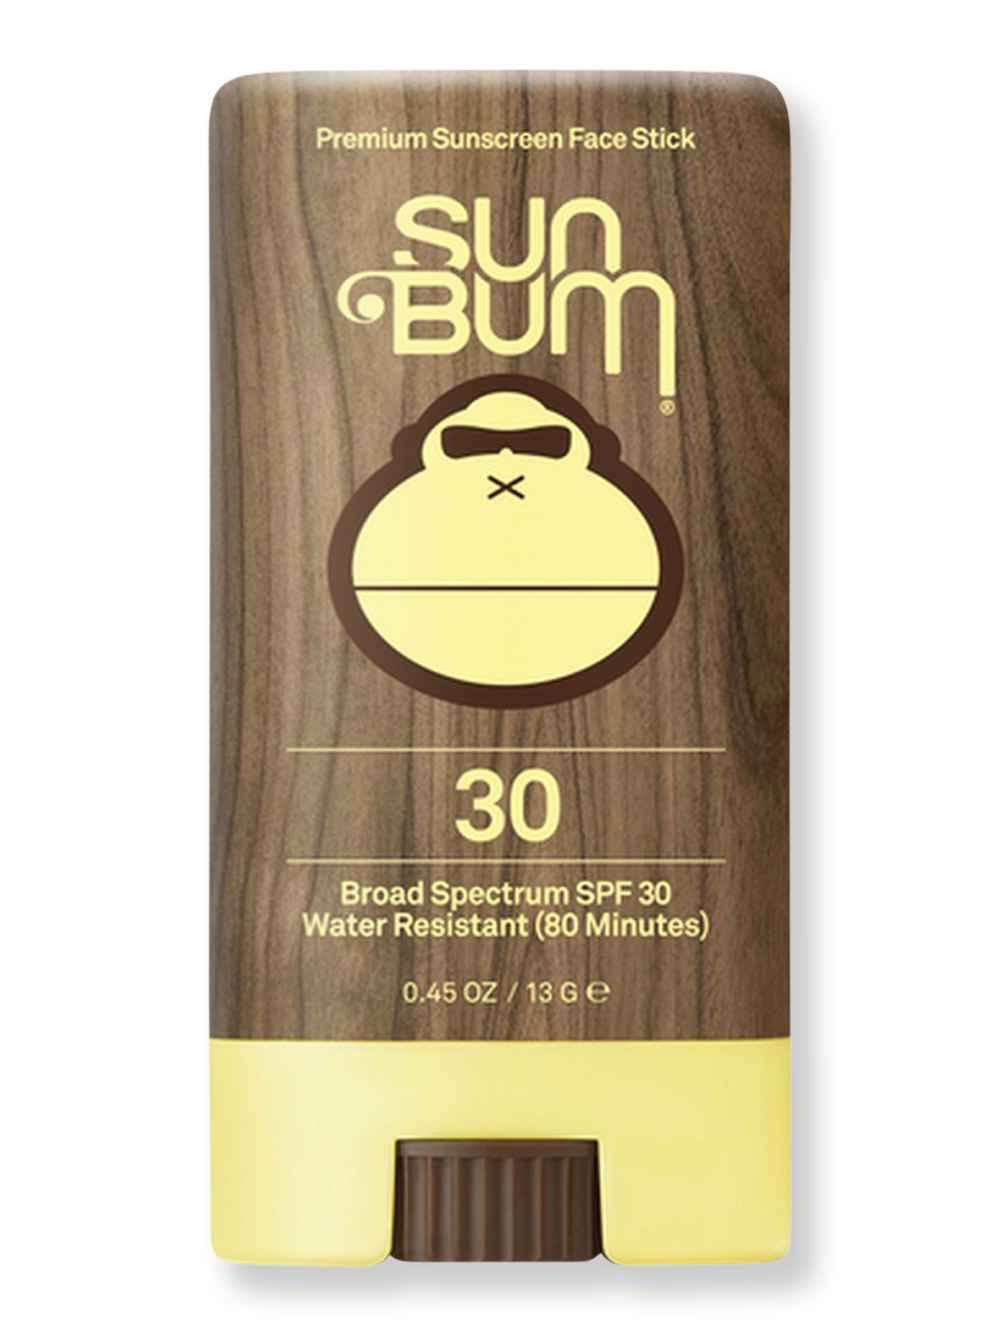 Sun Bum Face Stick Sunscreen Sunblock - SPF 30, 0.45oz